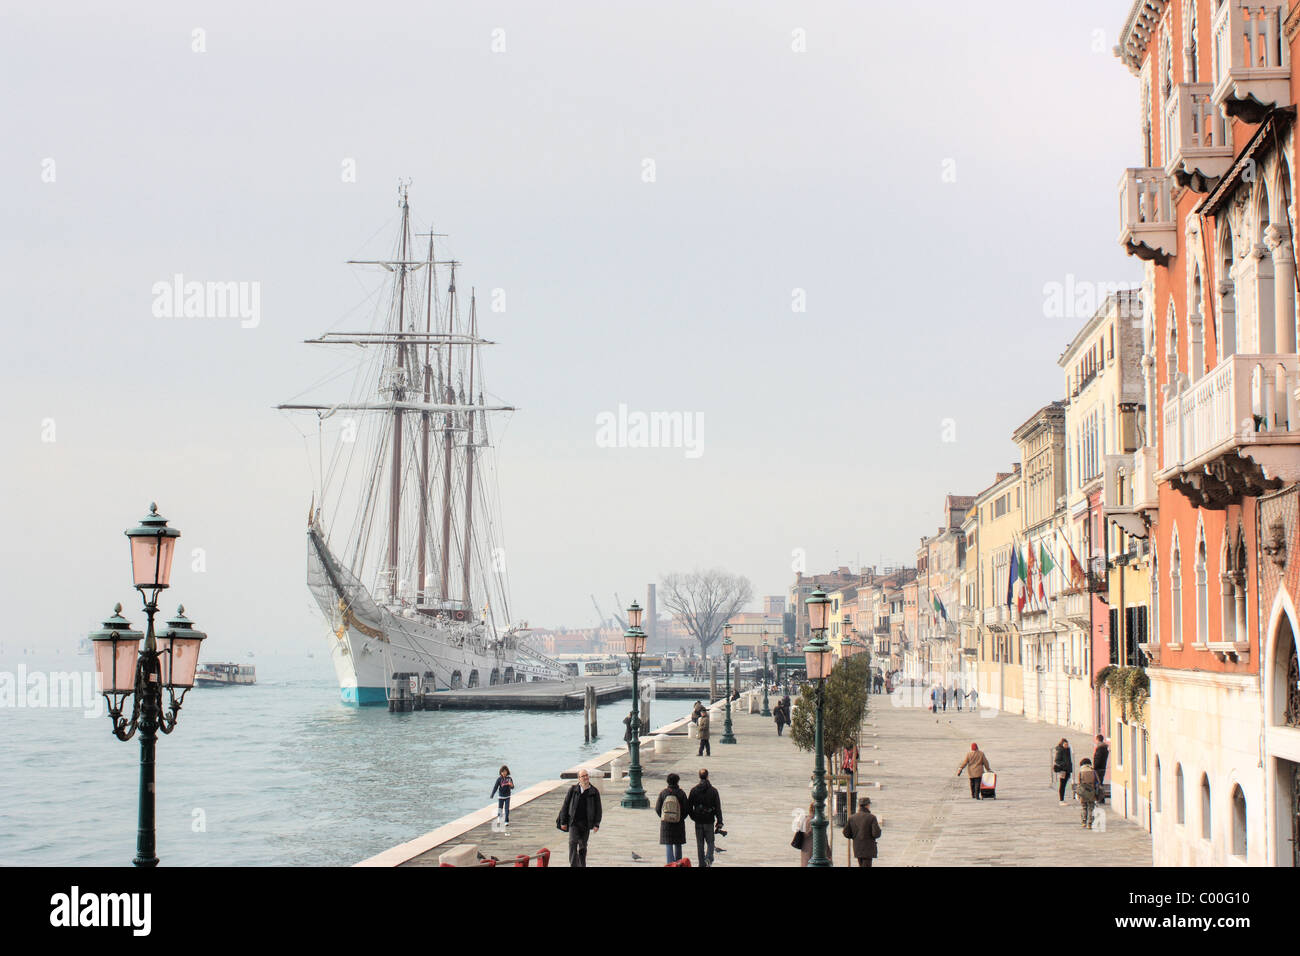 Formación de buques de vela de la Armada Española "Juan Sebastián de Elcano" OMI 8642567 en Zattere Waterfront, Venecia Foto de stock